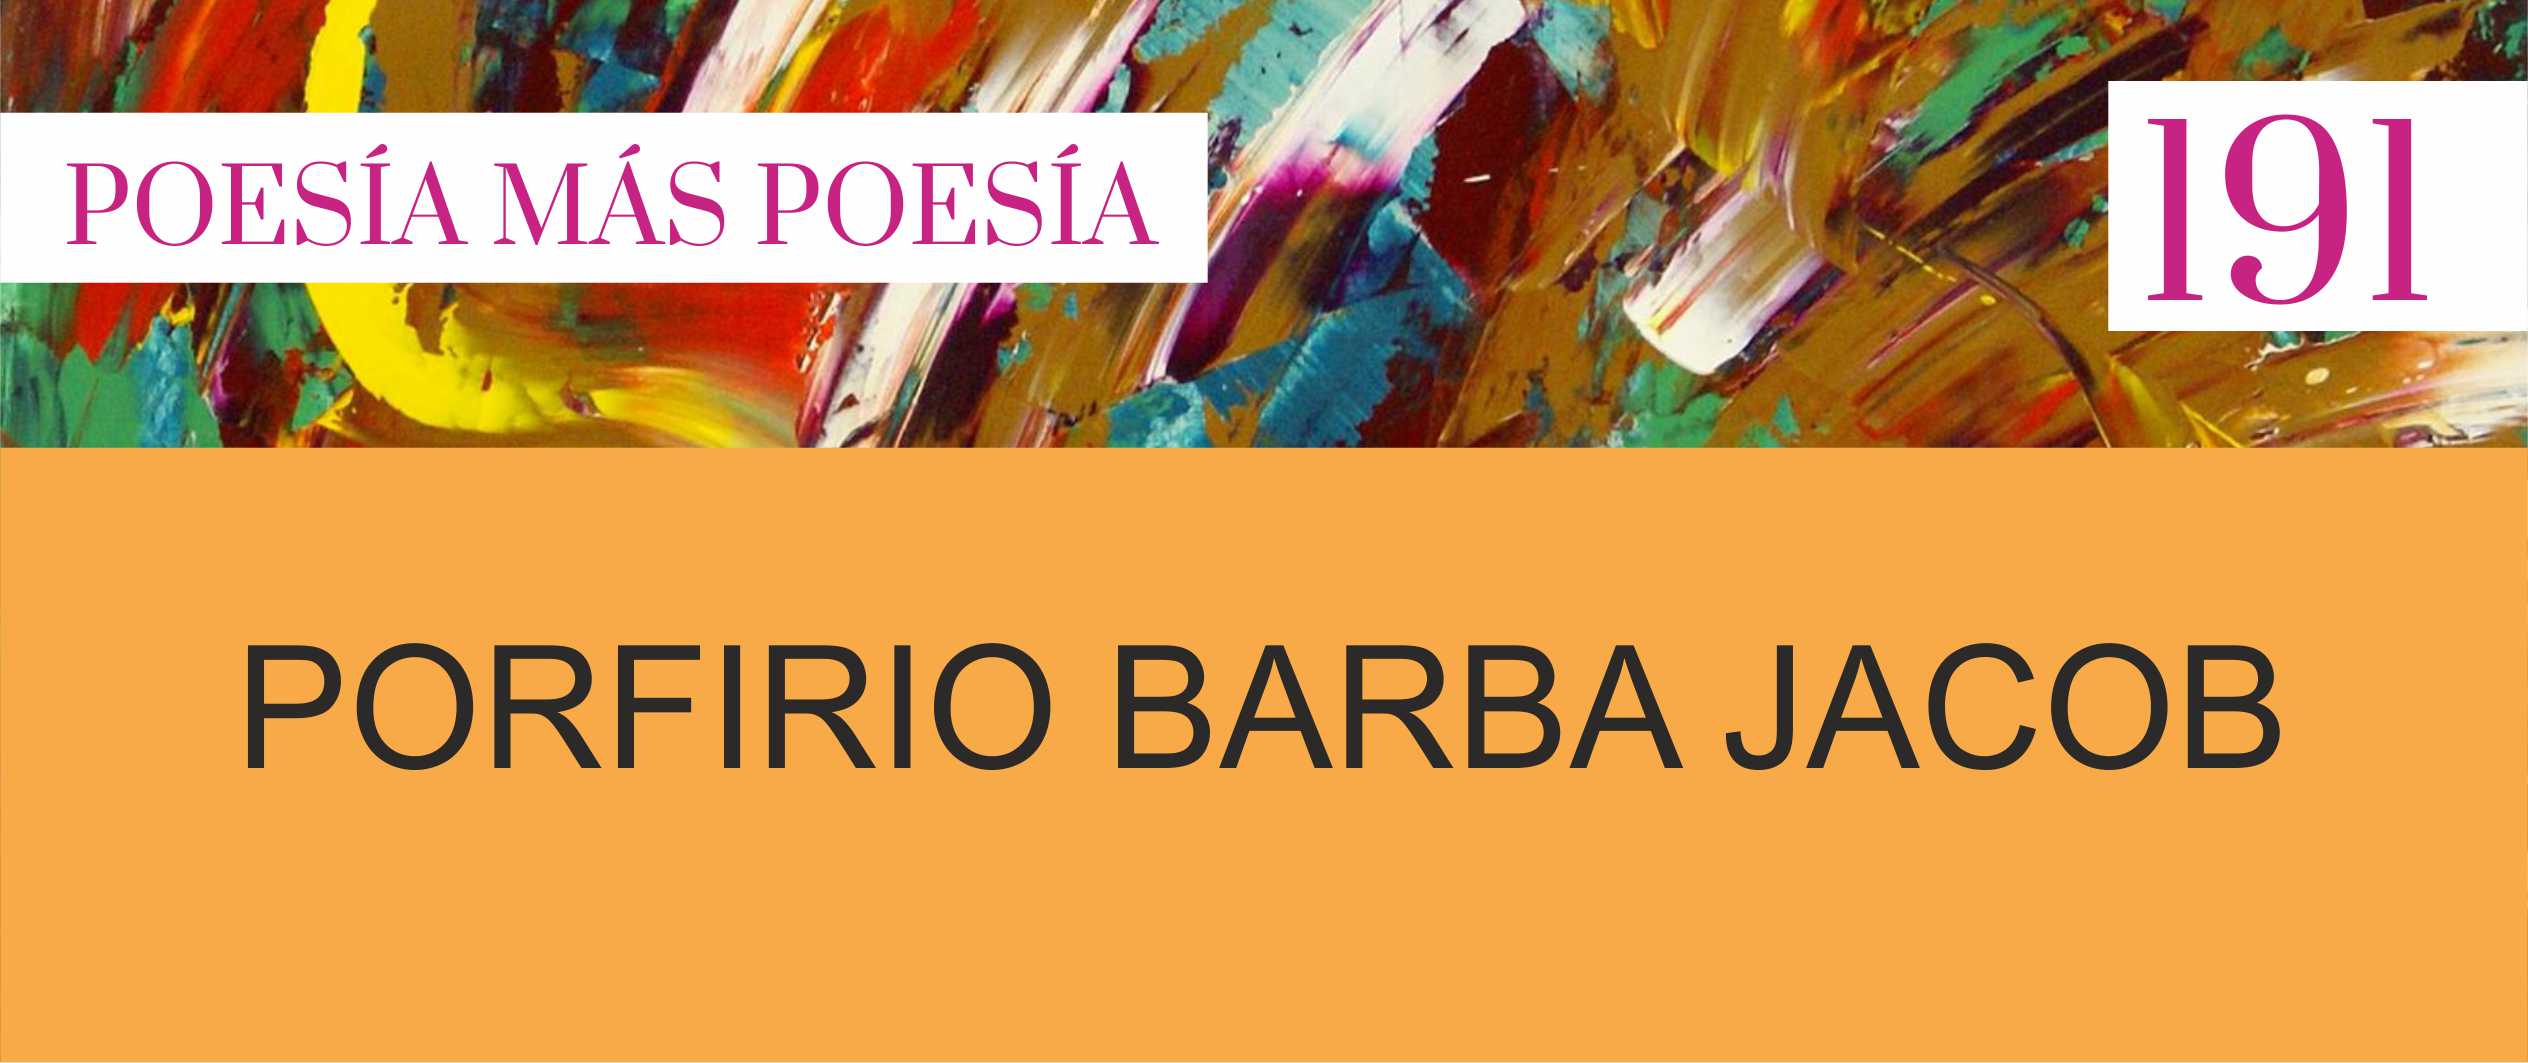 191. Poesía más Poesía: Porfirio Barba Jacob